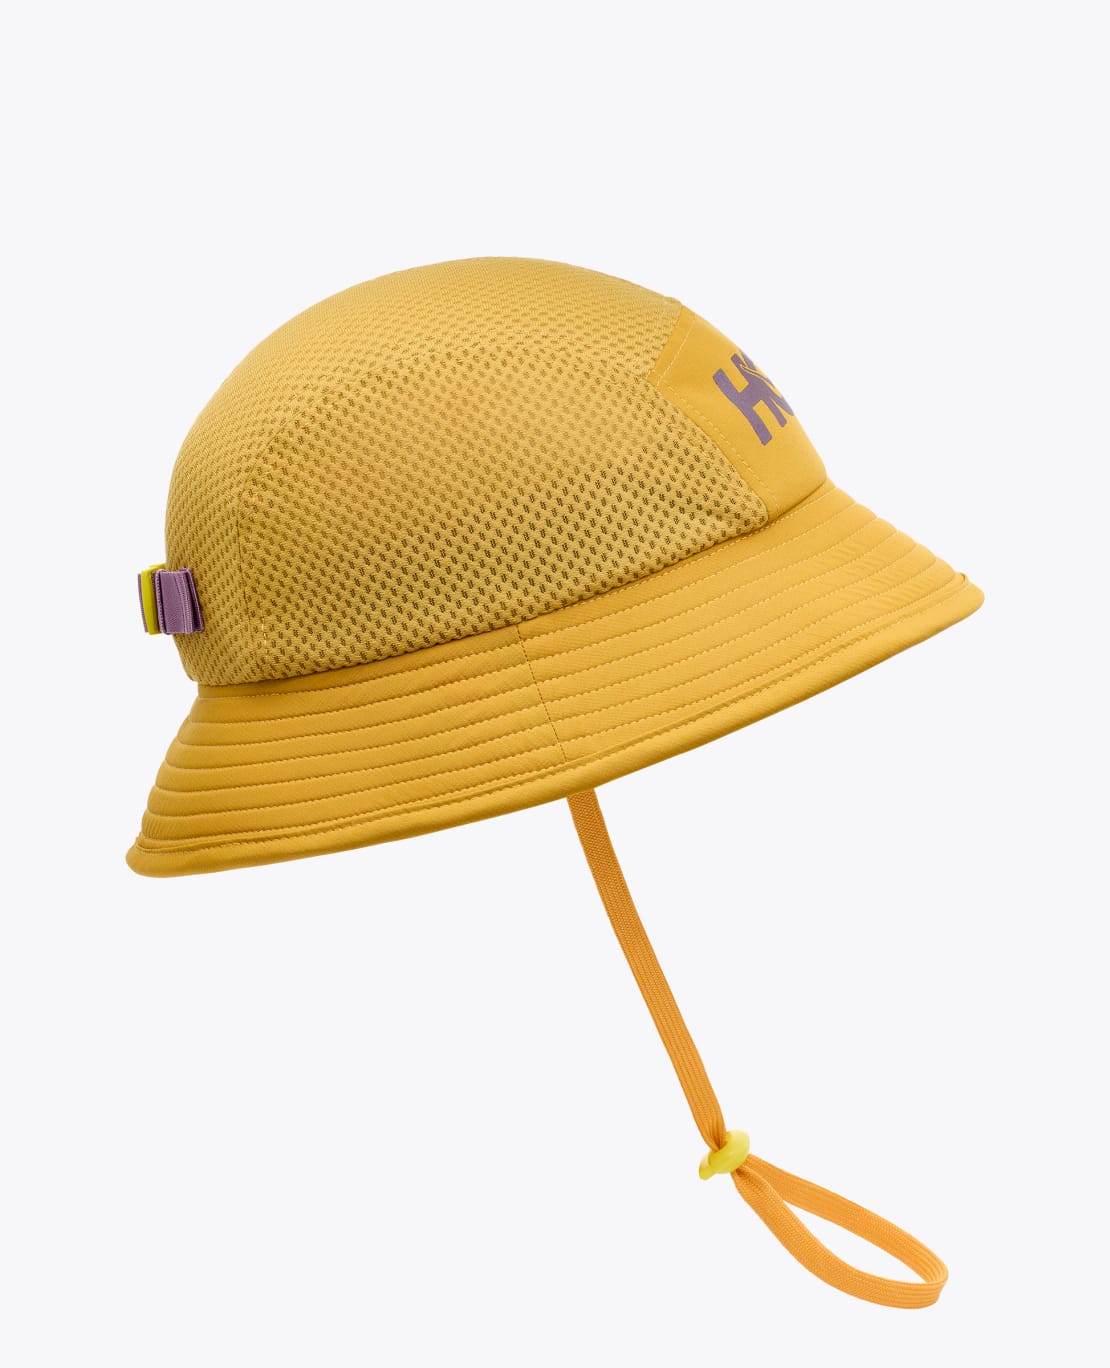 Adjustable Bucket Adventure Hat